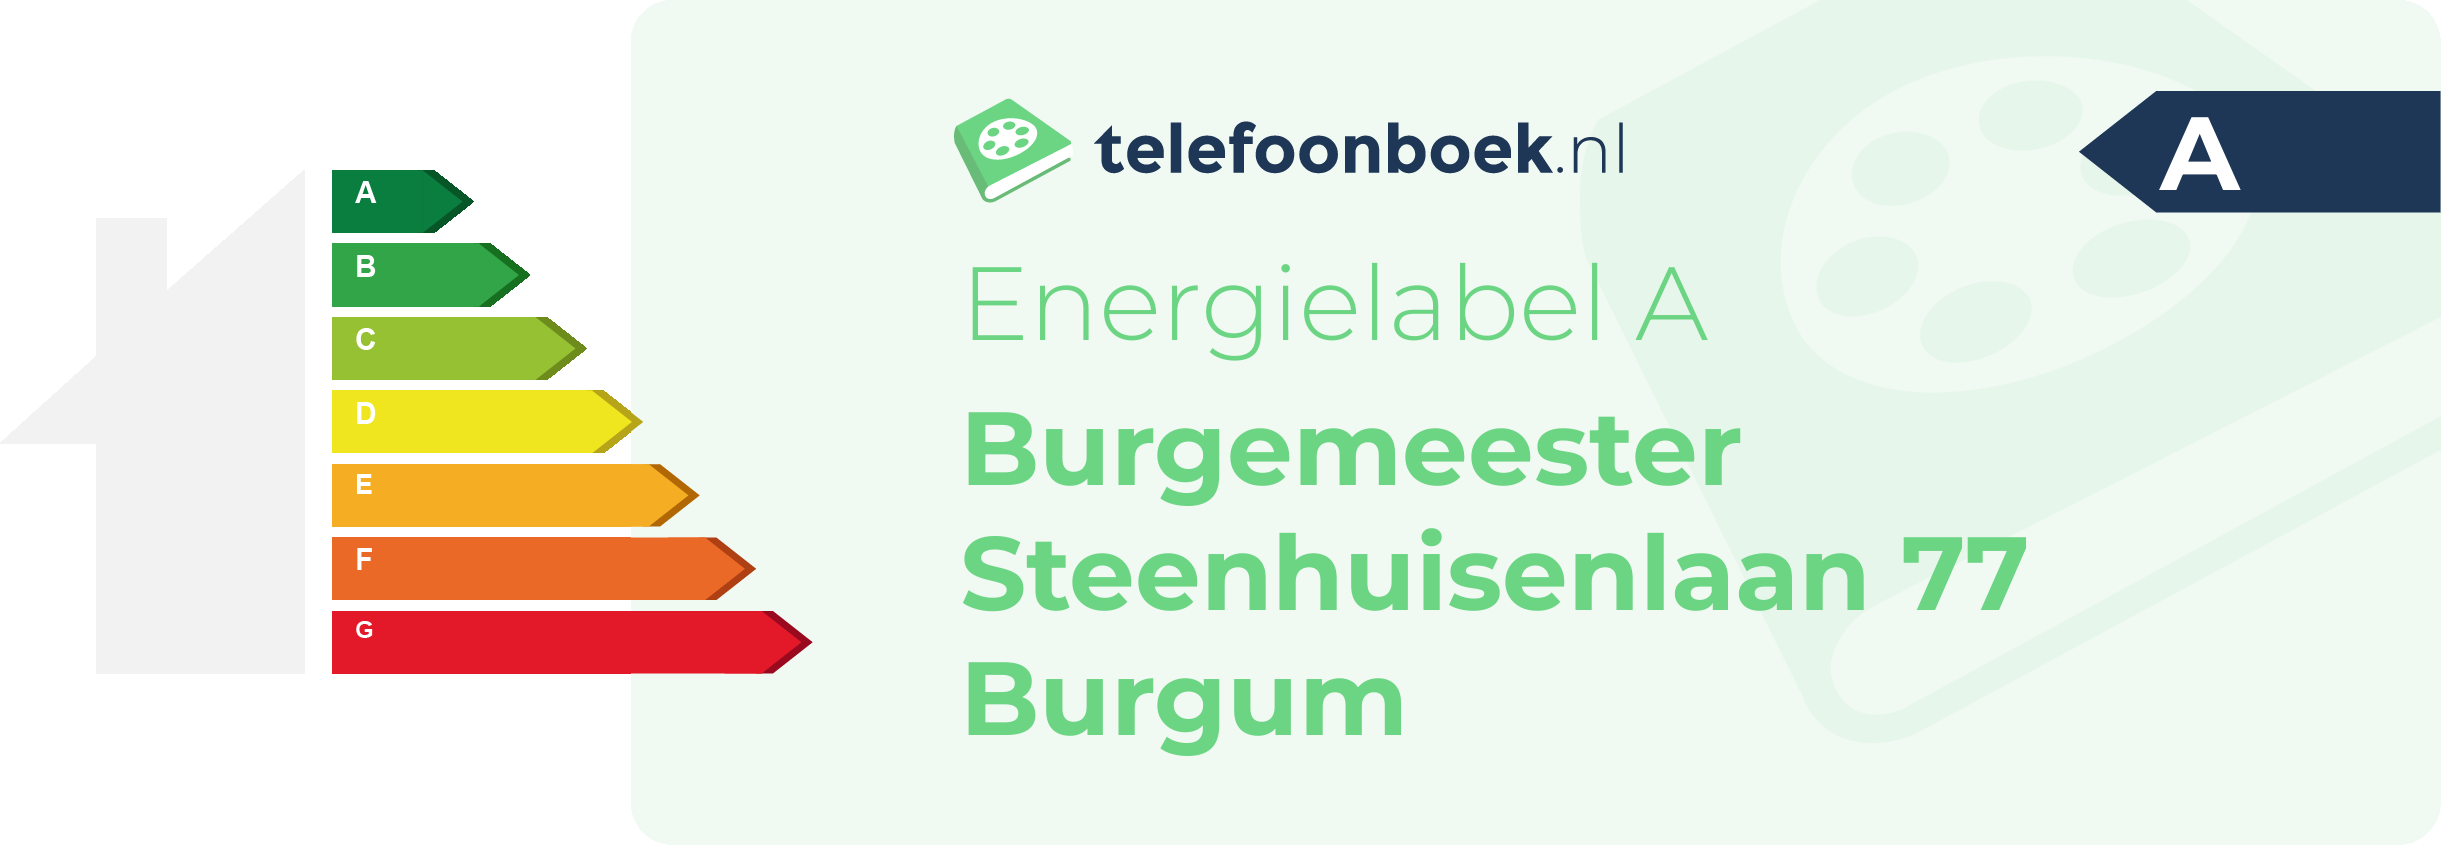 Energielabel Burgemeester Steenhuisenlaan 77 Burgum